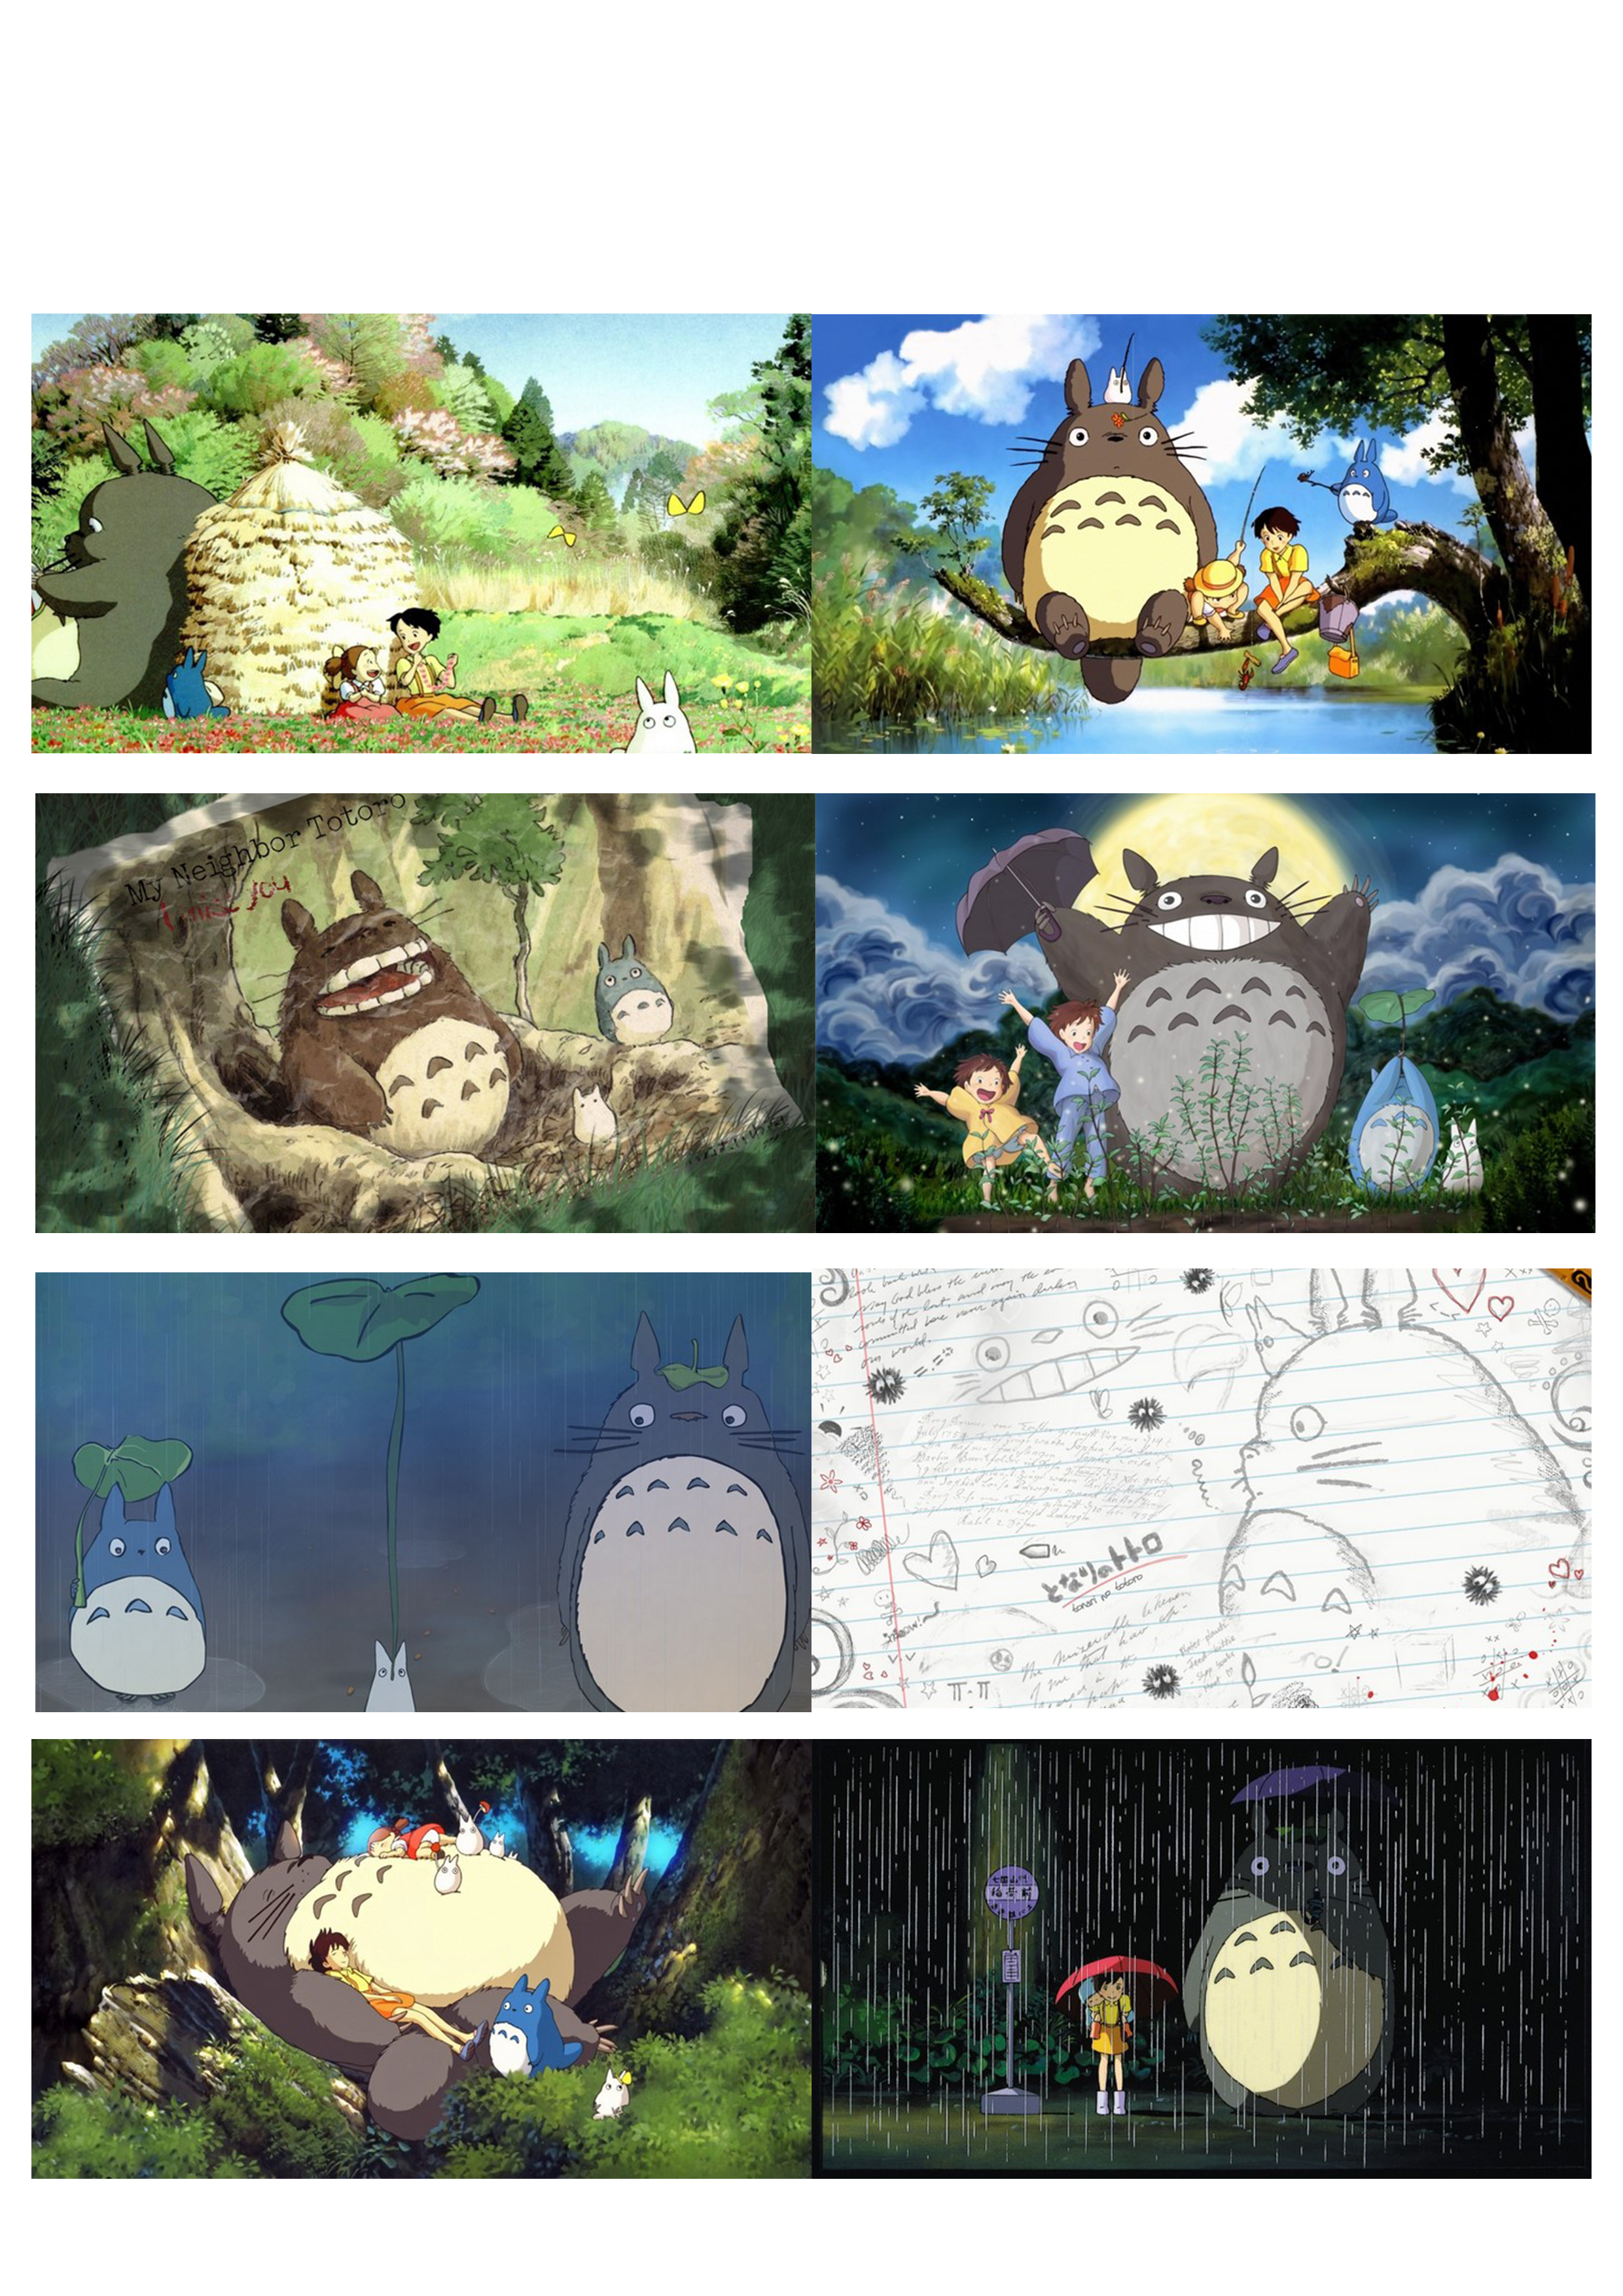 Poster 8 Tấm A4 Hàng Xóm Của Tôi Là Totoro Ghibli Studio Anime Tranh Treo  Album Ảnh In Hình Đẹp (Mẫu Giao Ngẫu Nhiên) - Thiệp - Bưu Ảnh | Sáchviệt.Vn